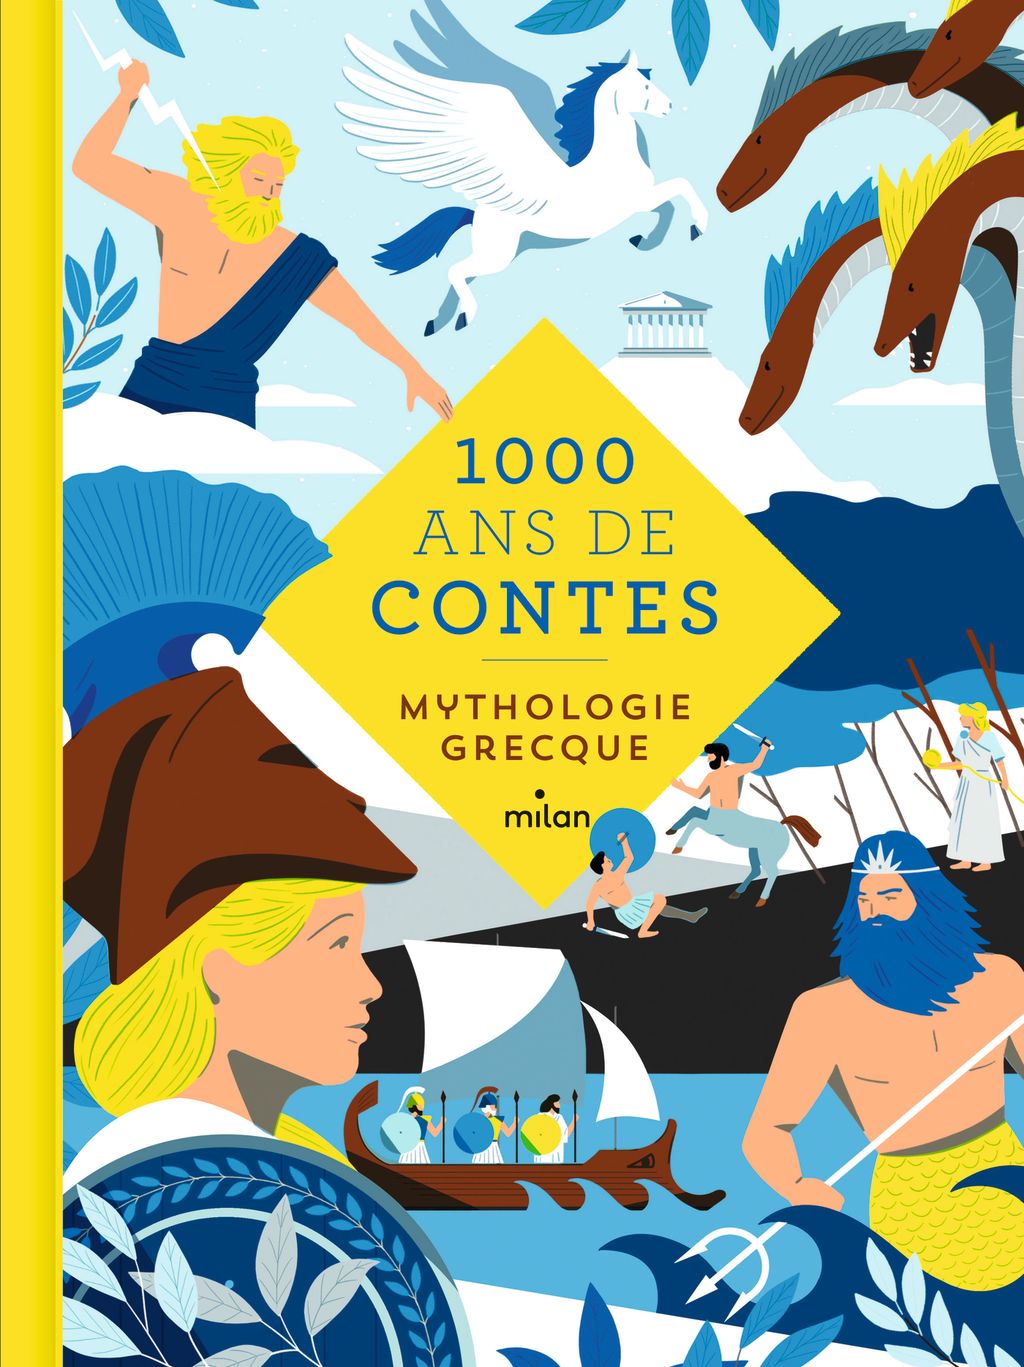 « Mille ans de contes mythologie grecque » cover